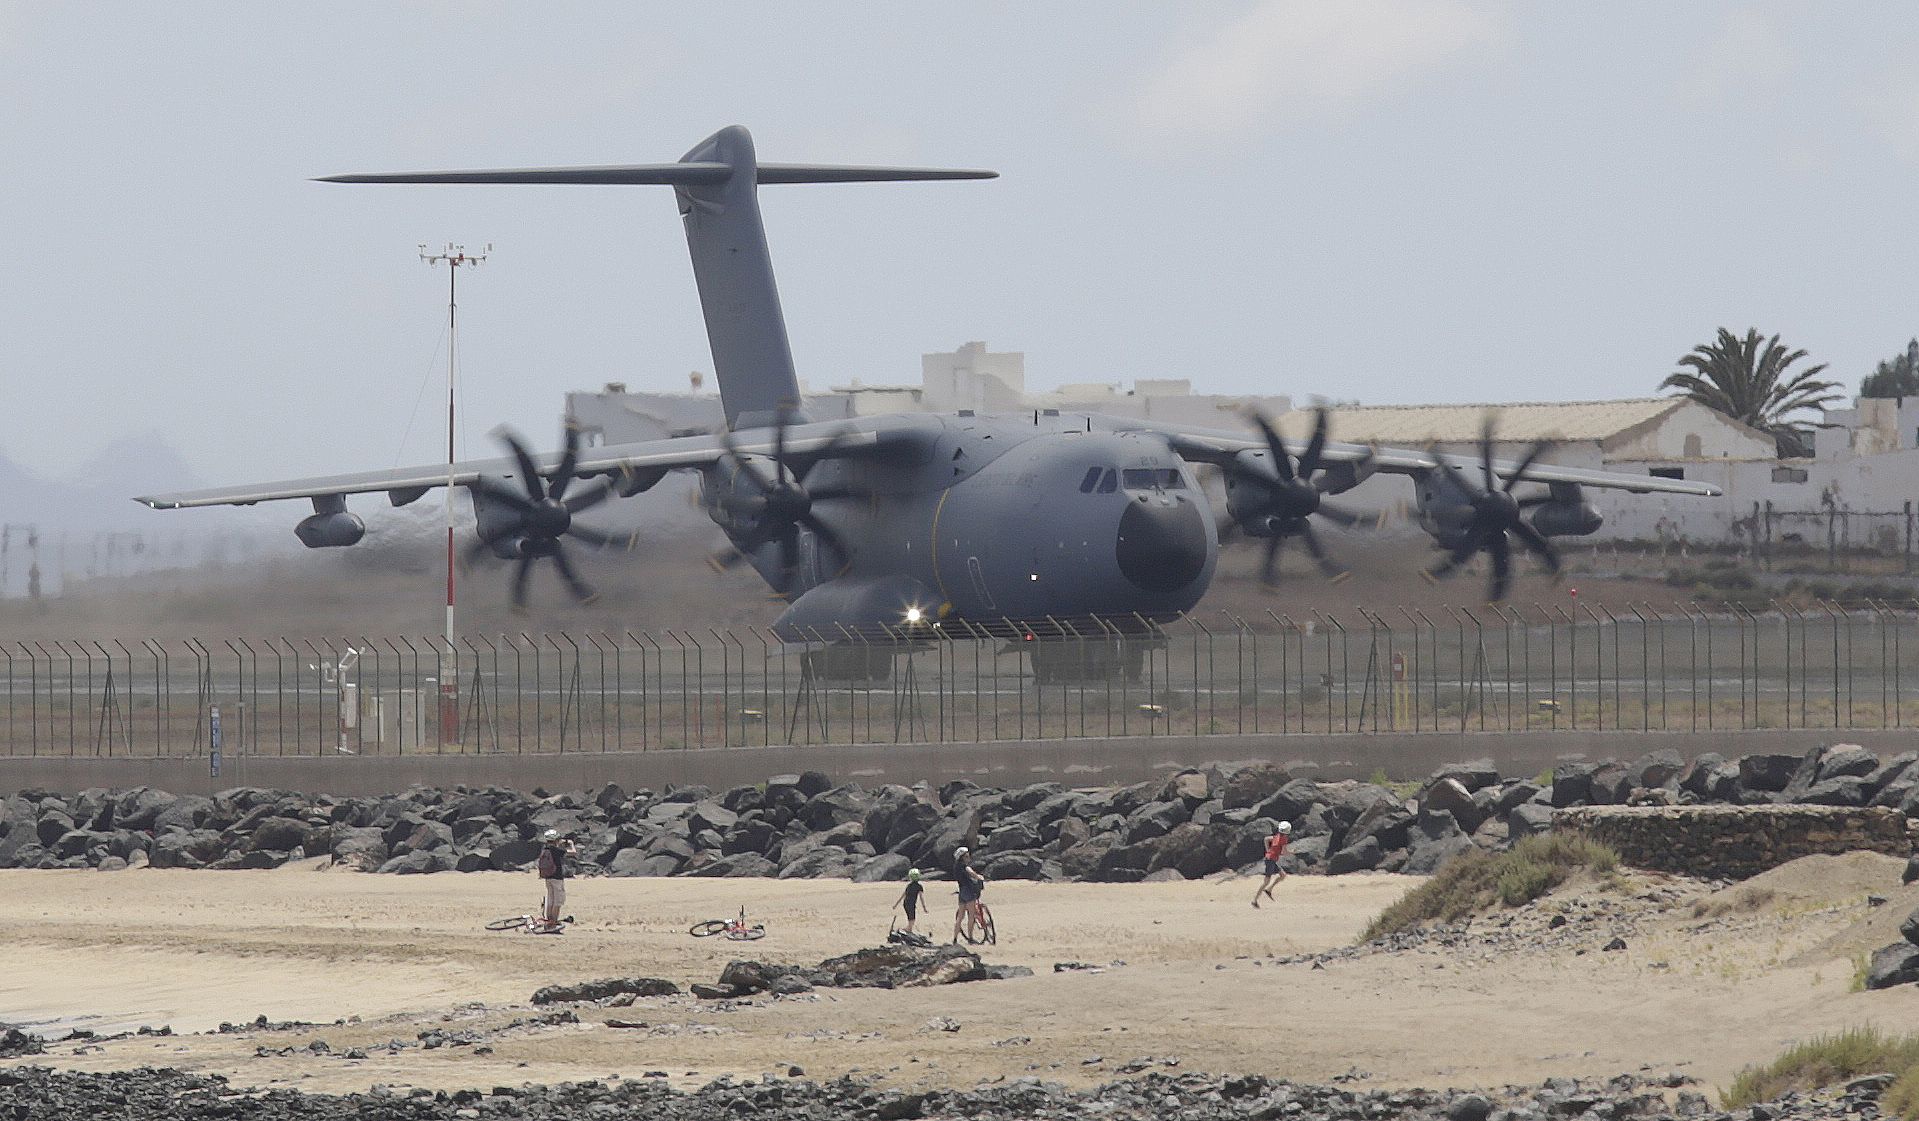 Maniobras militares de un avión en Lanzarote, Canarias. Foto: José Luis Carrasco.